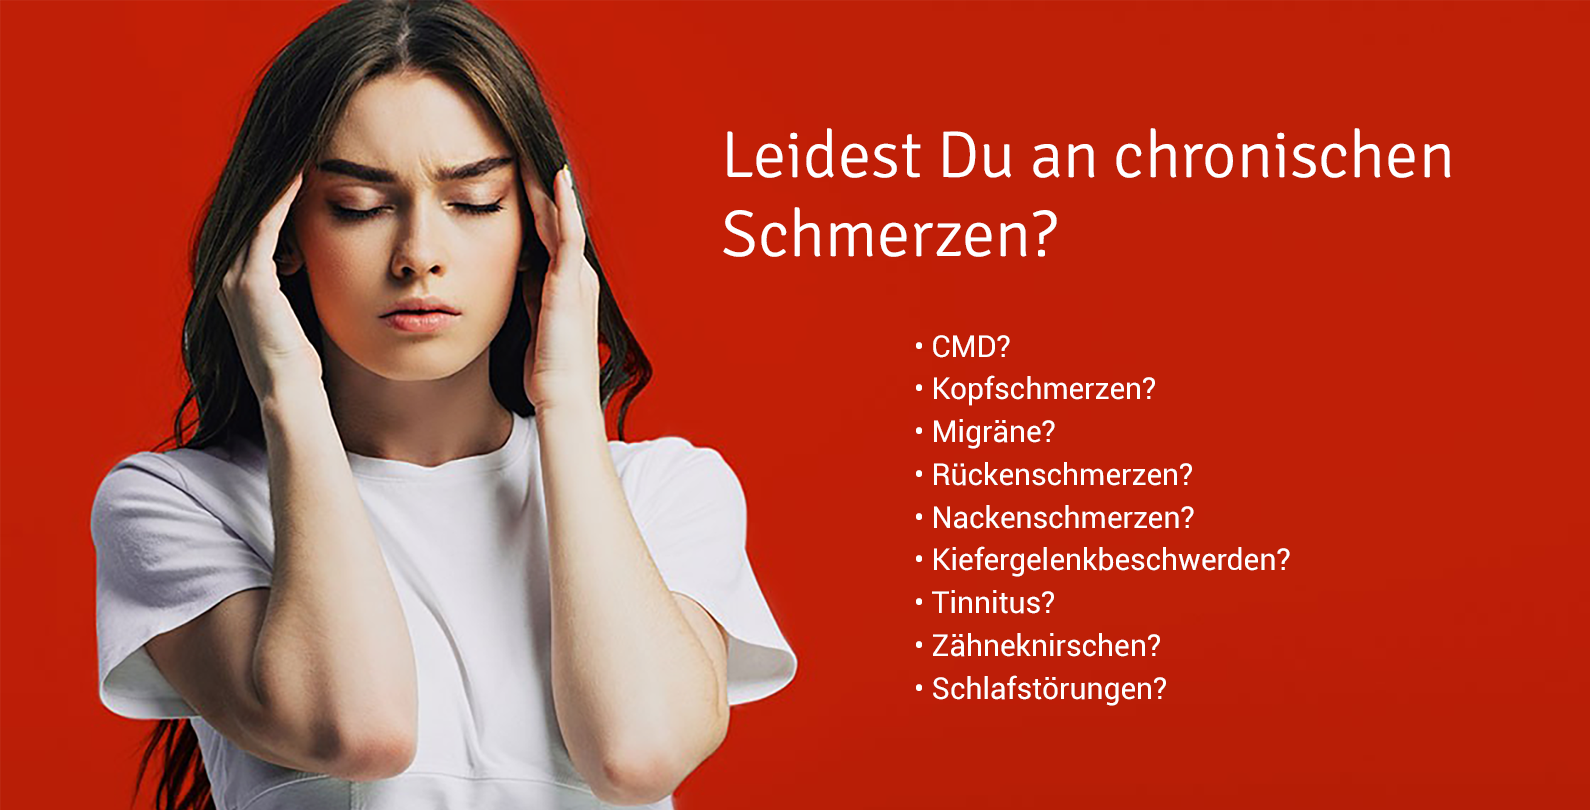 CMD-Schmerztherapie - Symptome, Behandlung Kieferorthopäde Köln Rodenkirchen - Dr. Schupp & Dr. Funke